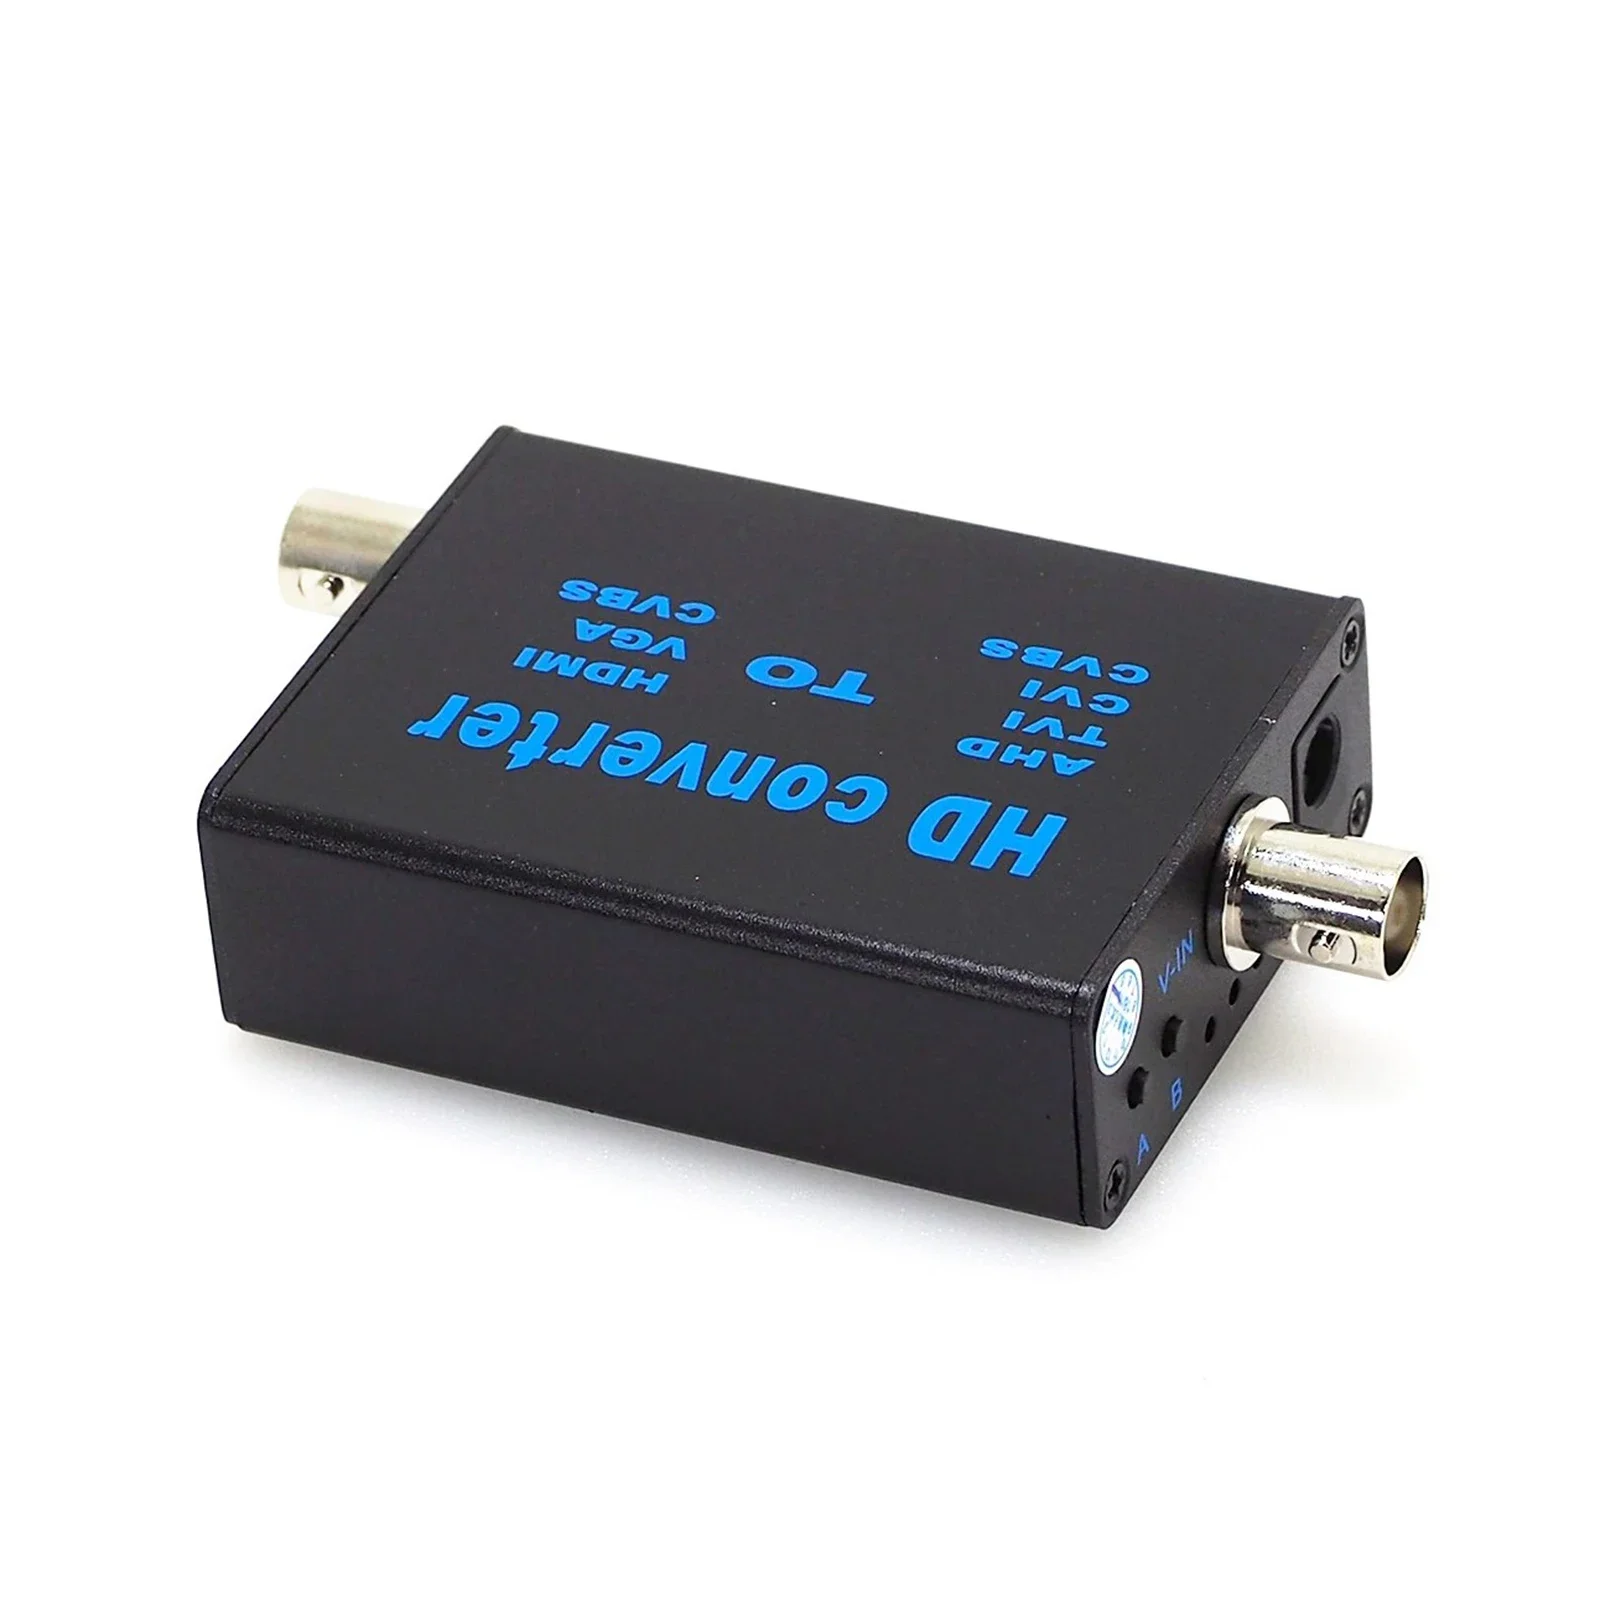 ahd-tvi-cvi-cvbs-signal-to-hdmi-vga-cvbs-video-signal-convertor-ahd41-support-1080p960p720p-video-signal-input